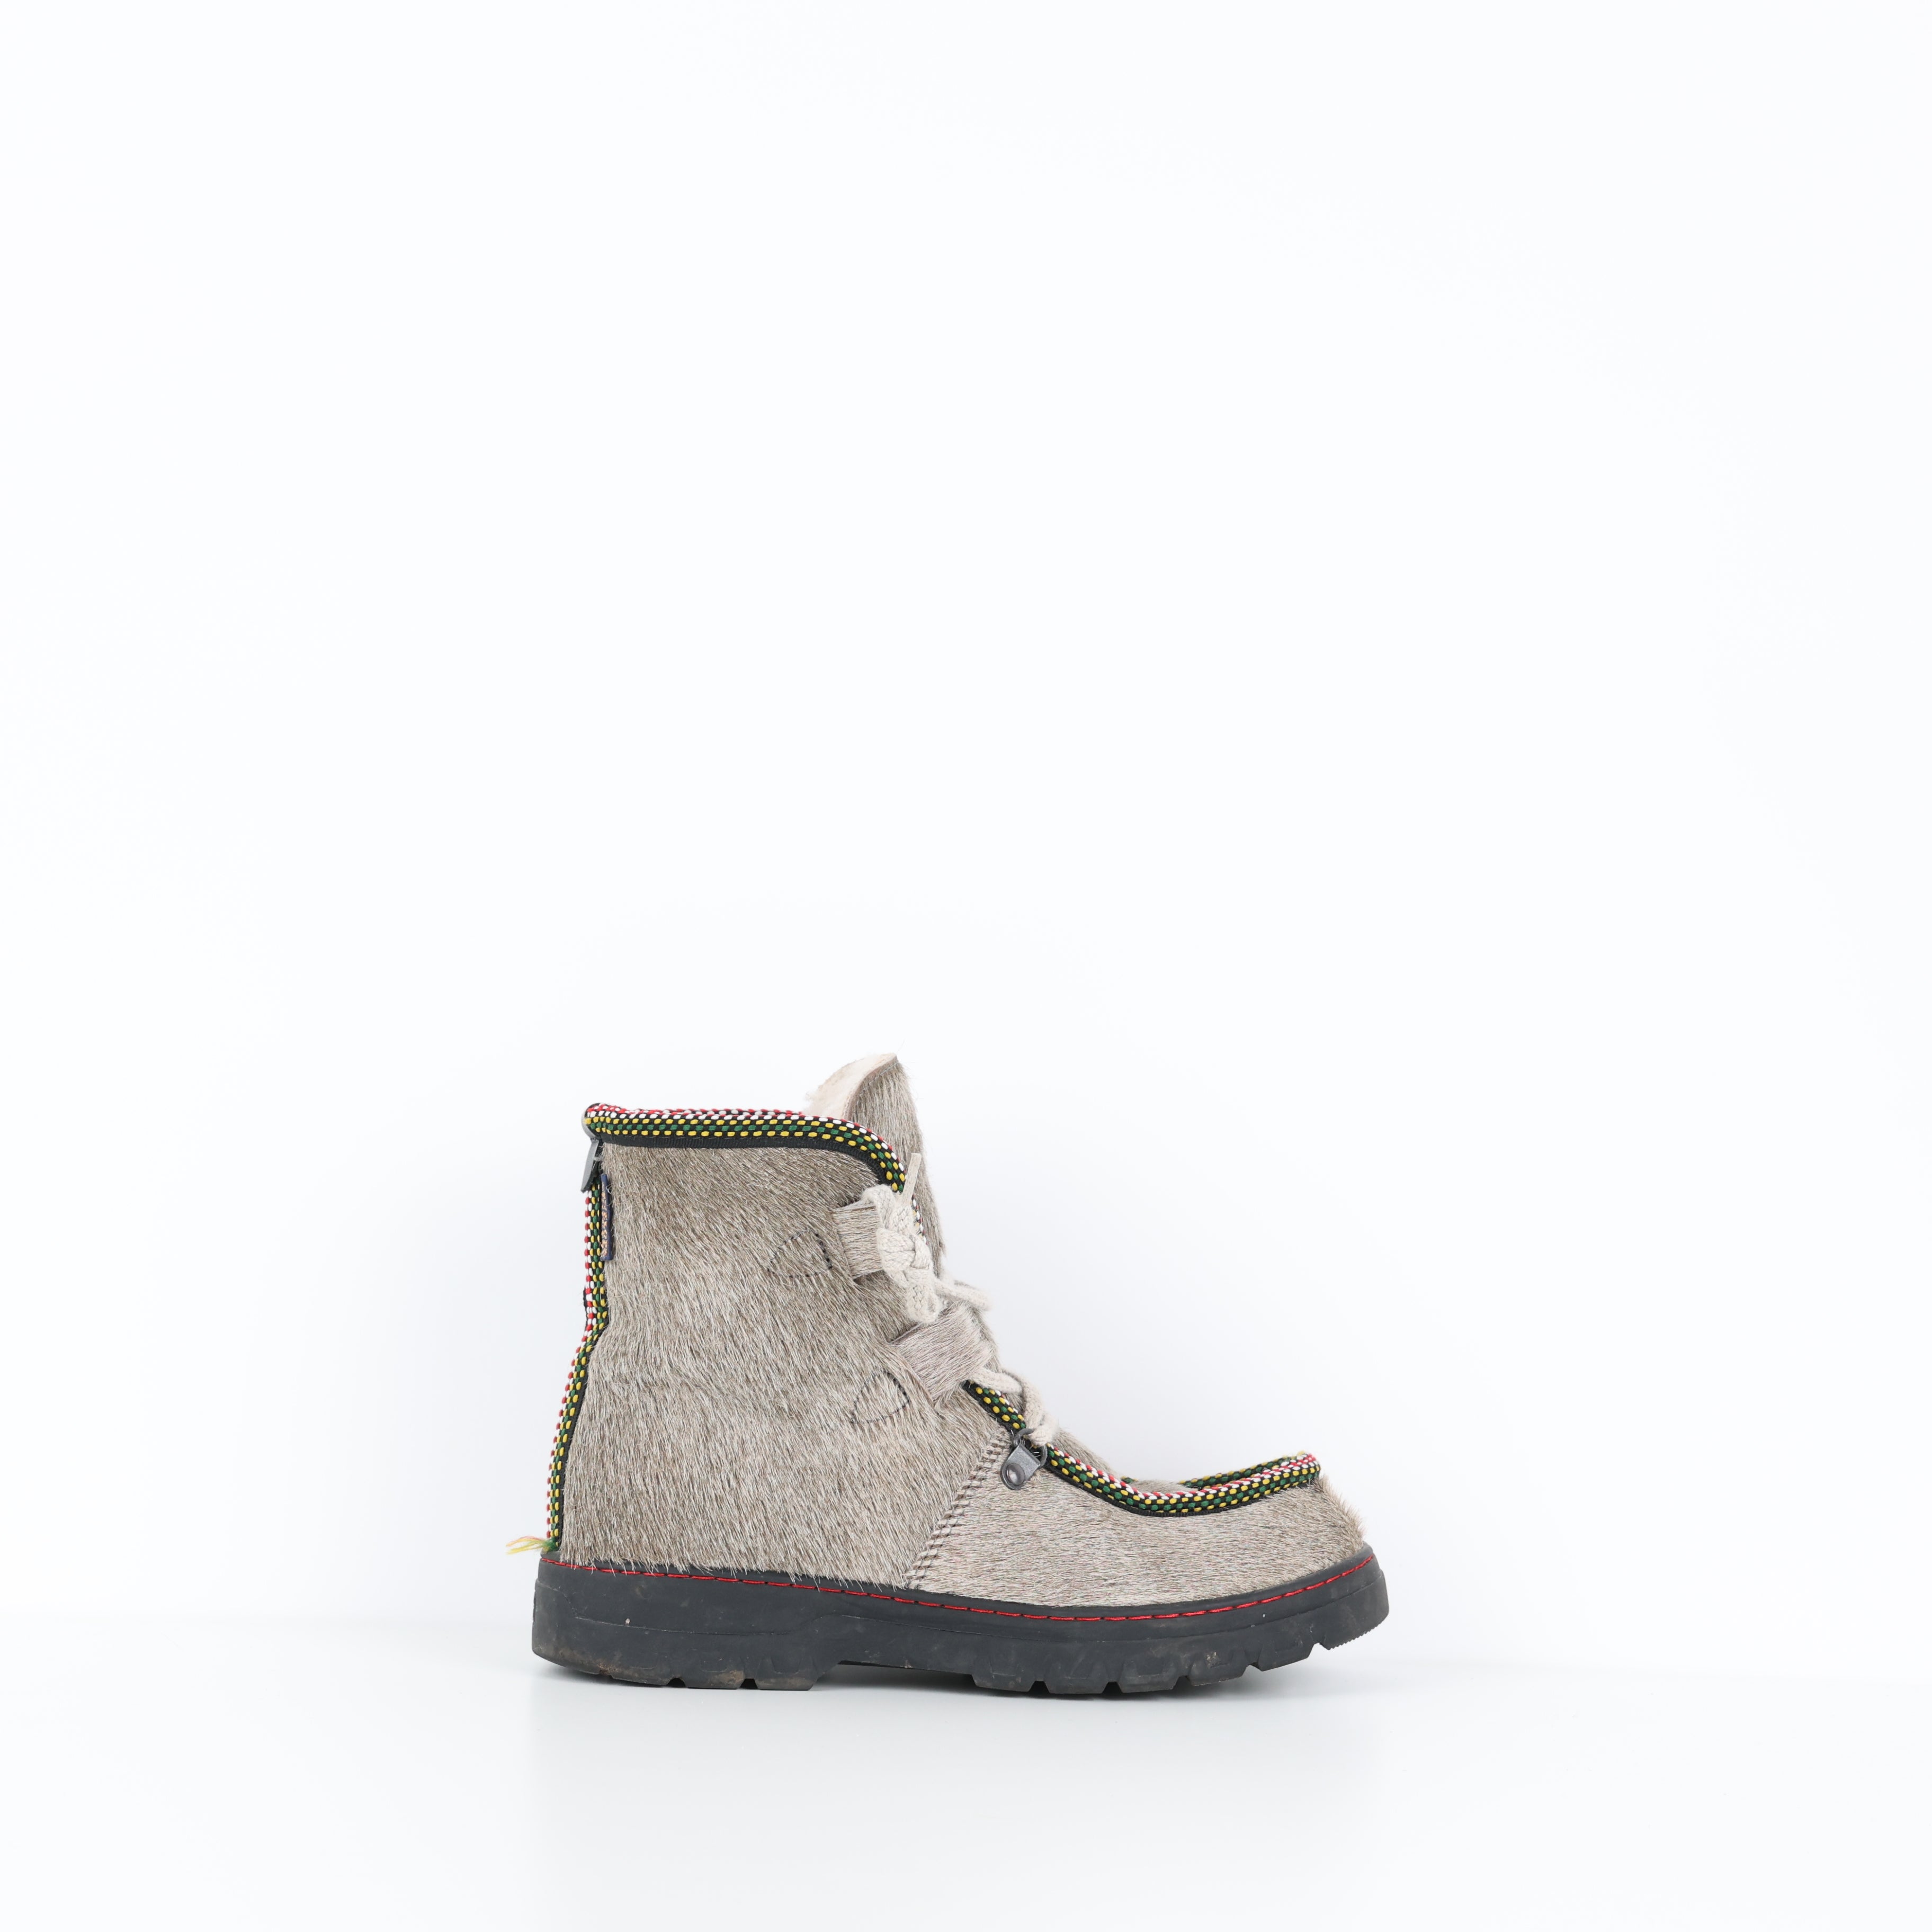 Boots , Shoe Size 37